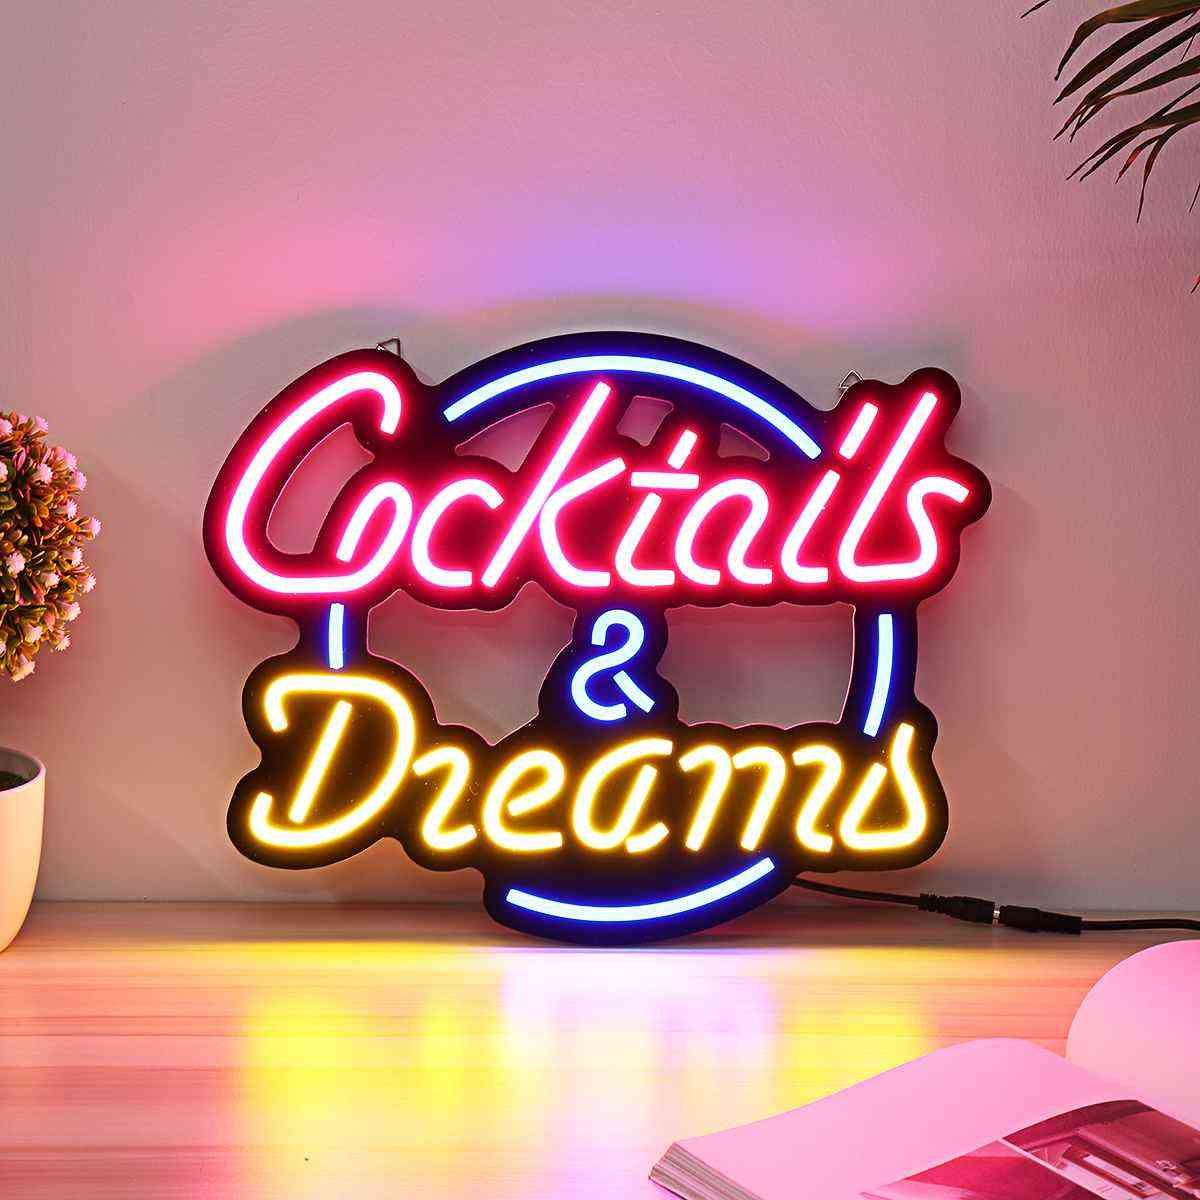 Cocktail vis tub de sticlă adevărat semn cu lumină de neon pentru decorare